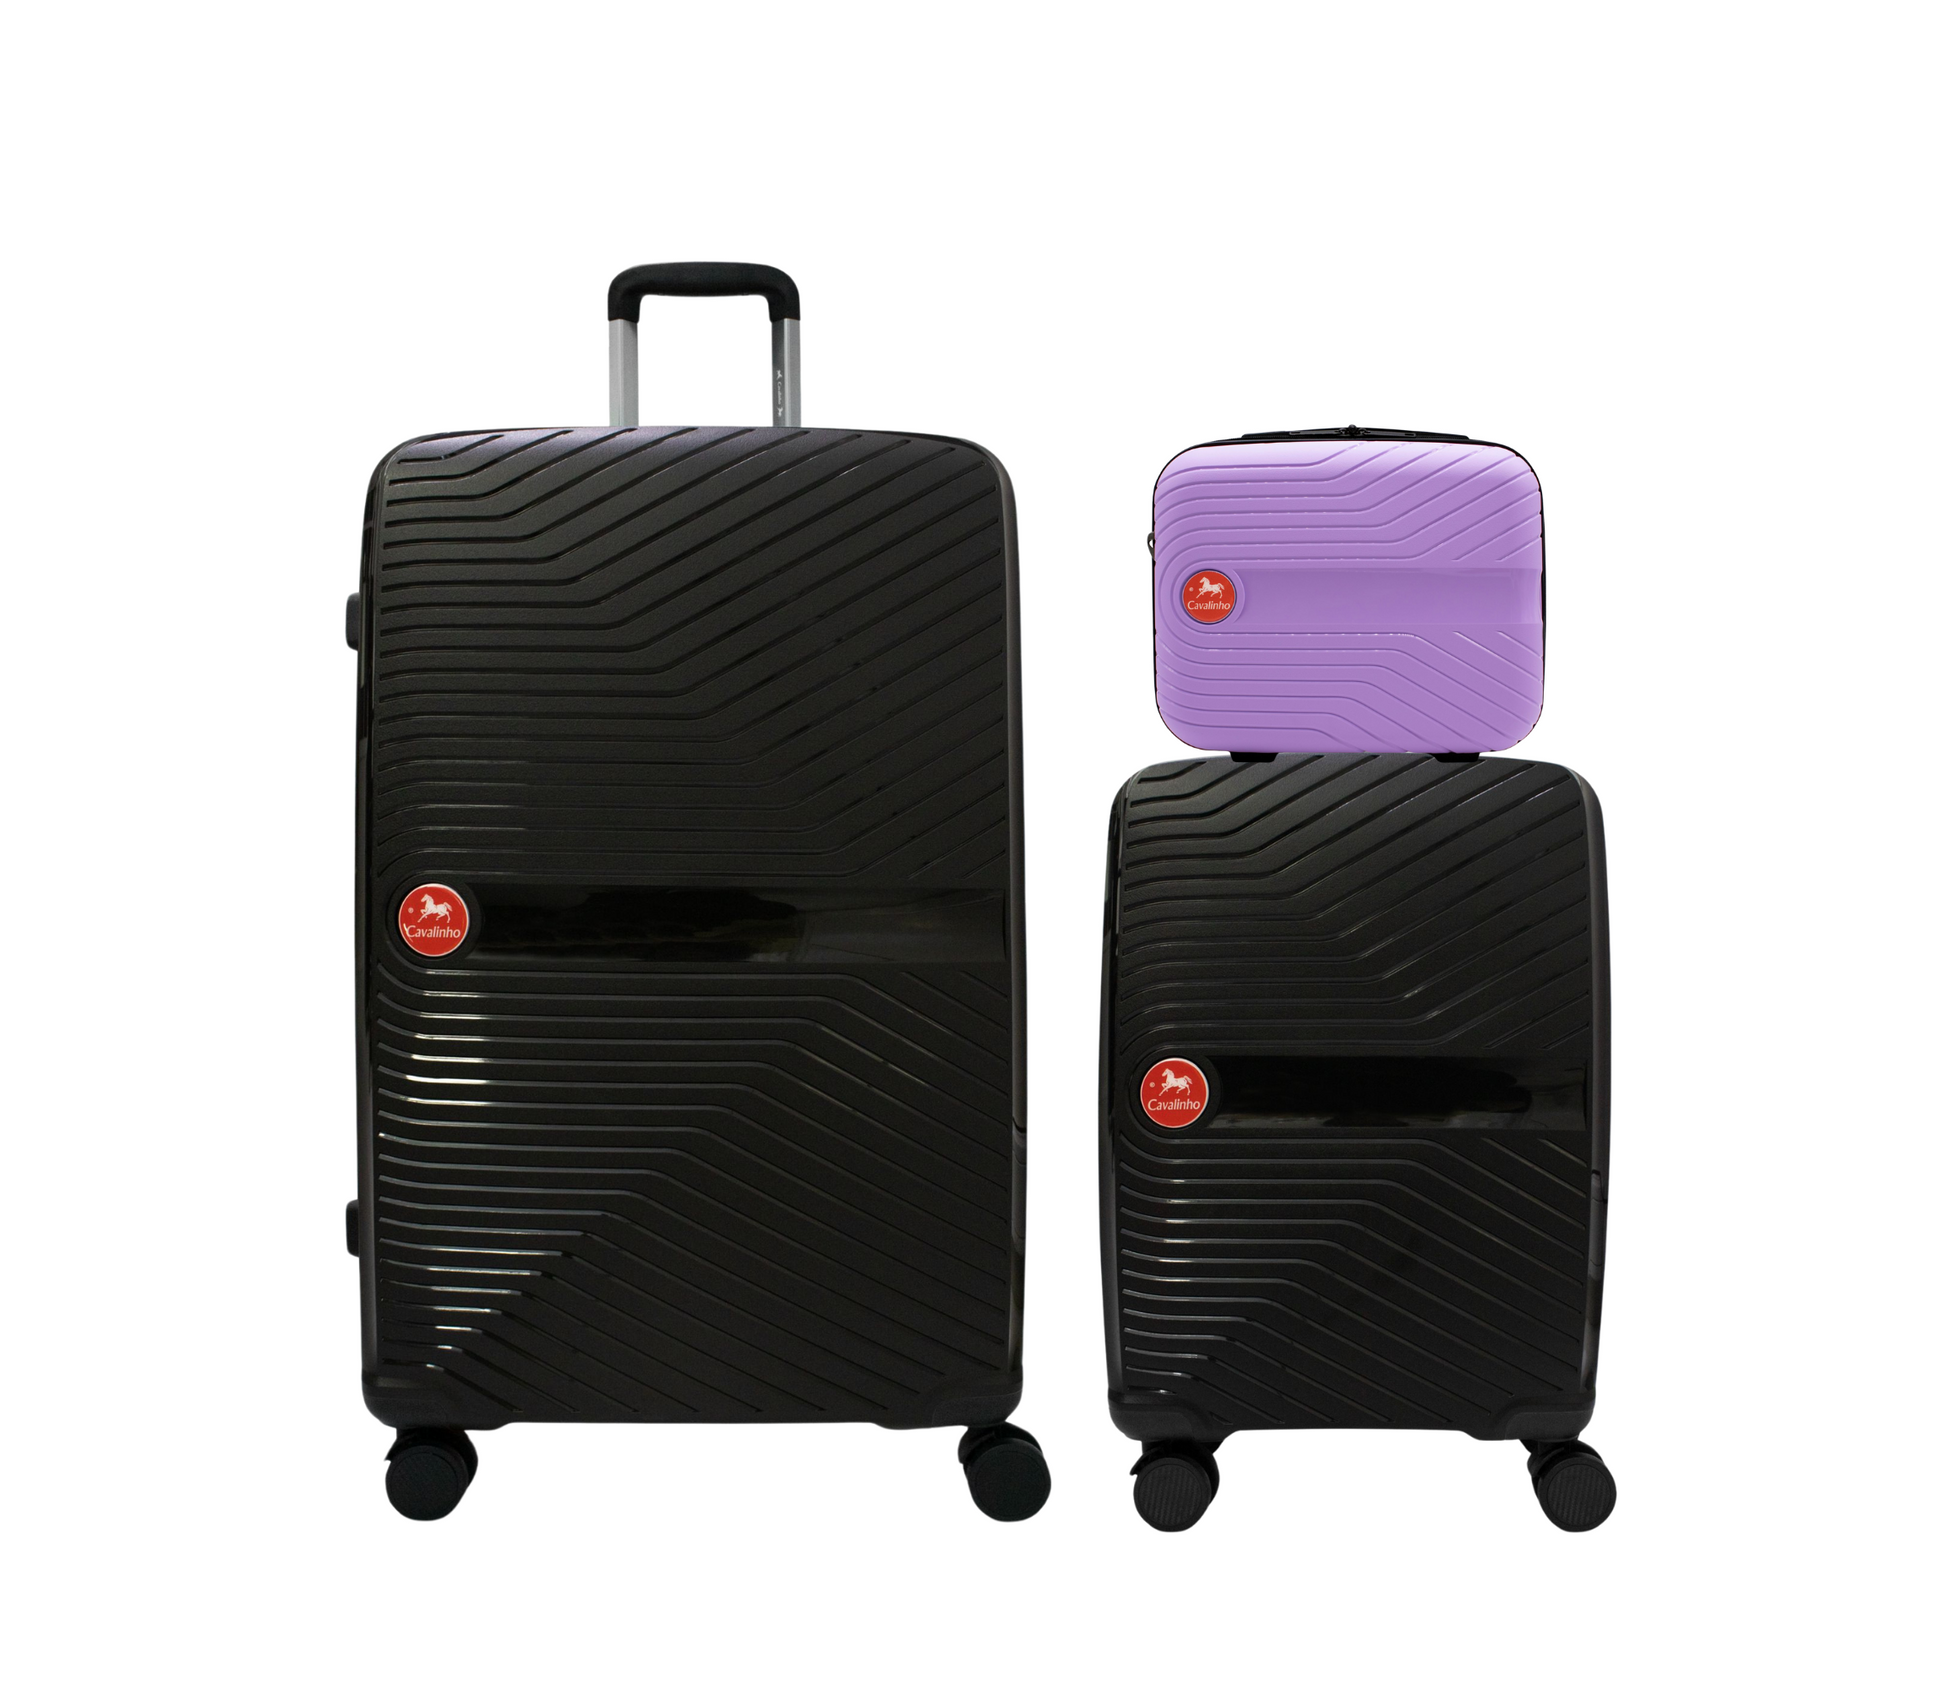 #color_ Lilac Black Black | Cavalinho Canada & USA Colorful 3 Piece Luggage Set (15", 19" & 28") - Lilac Black Black - 68020004.390101.S151928._1